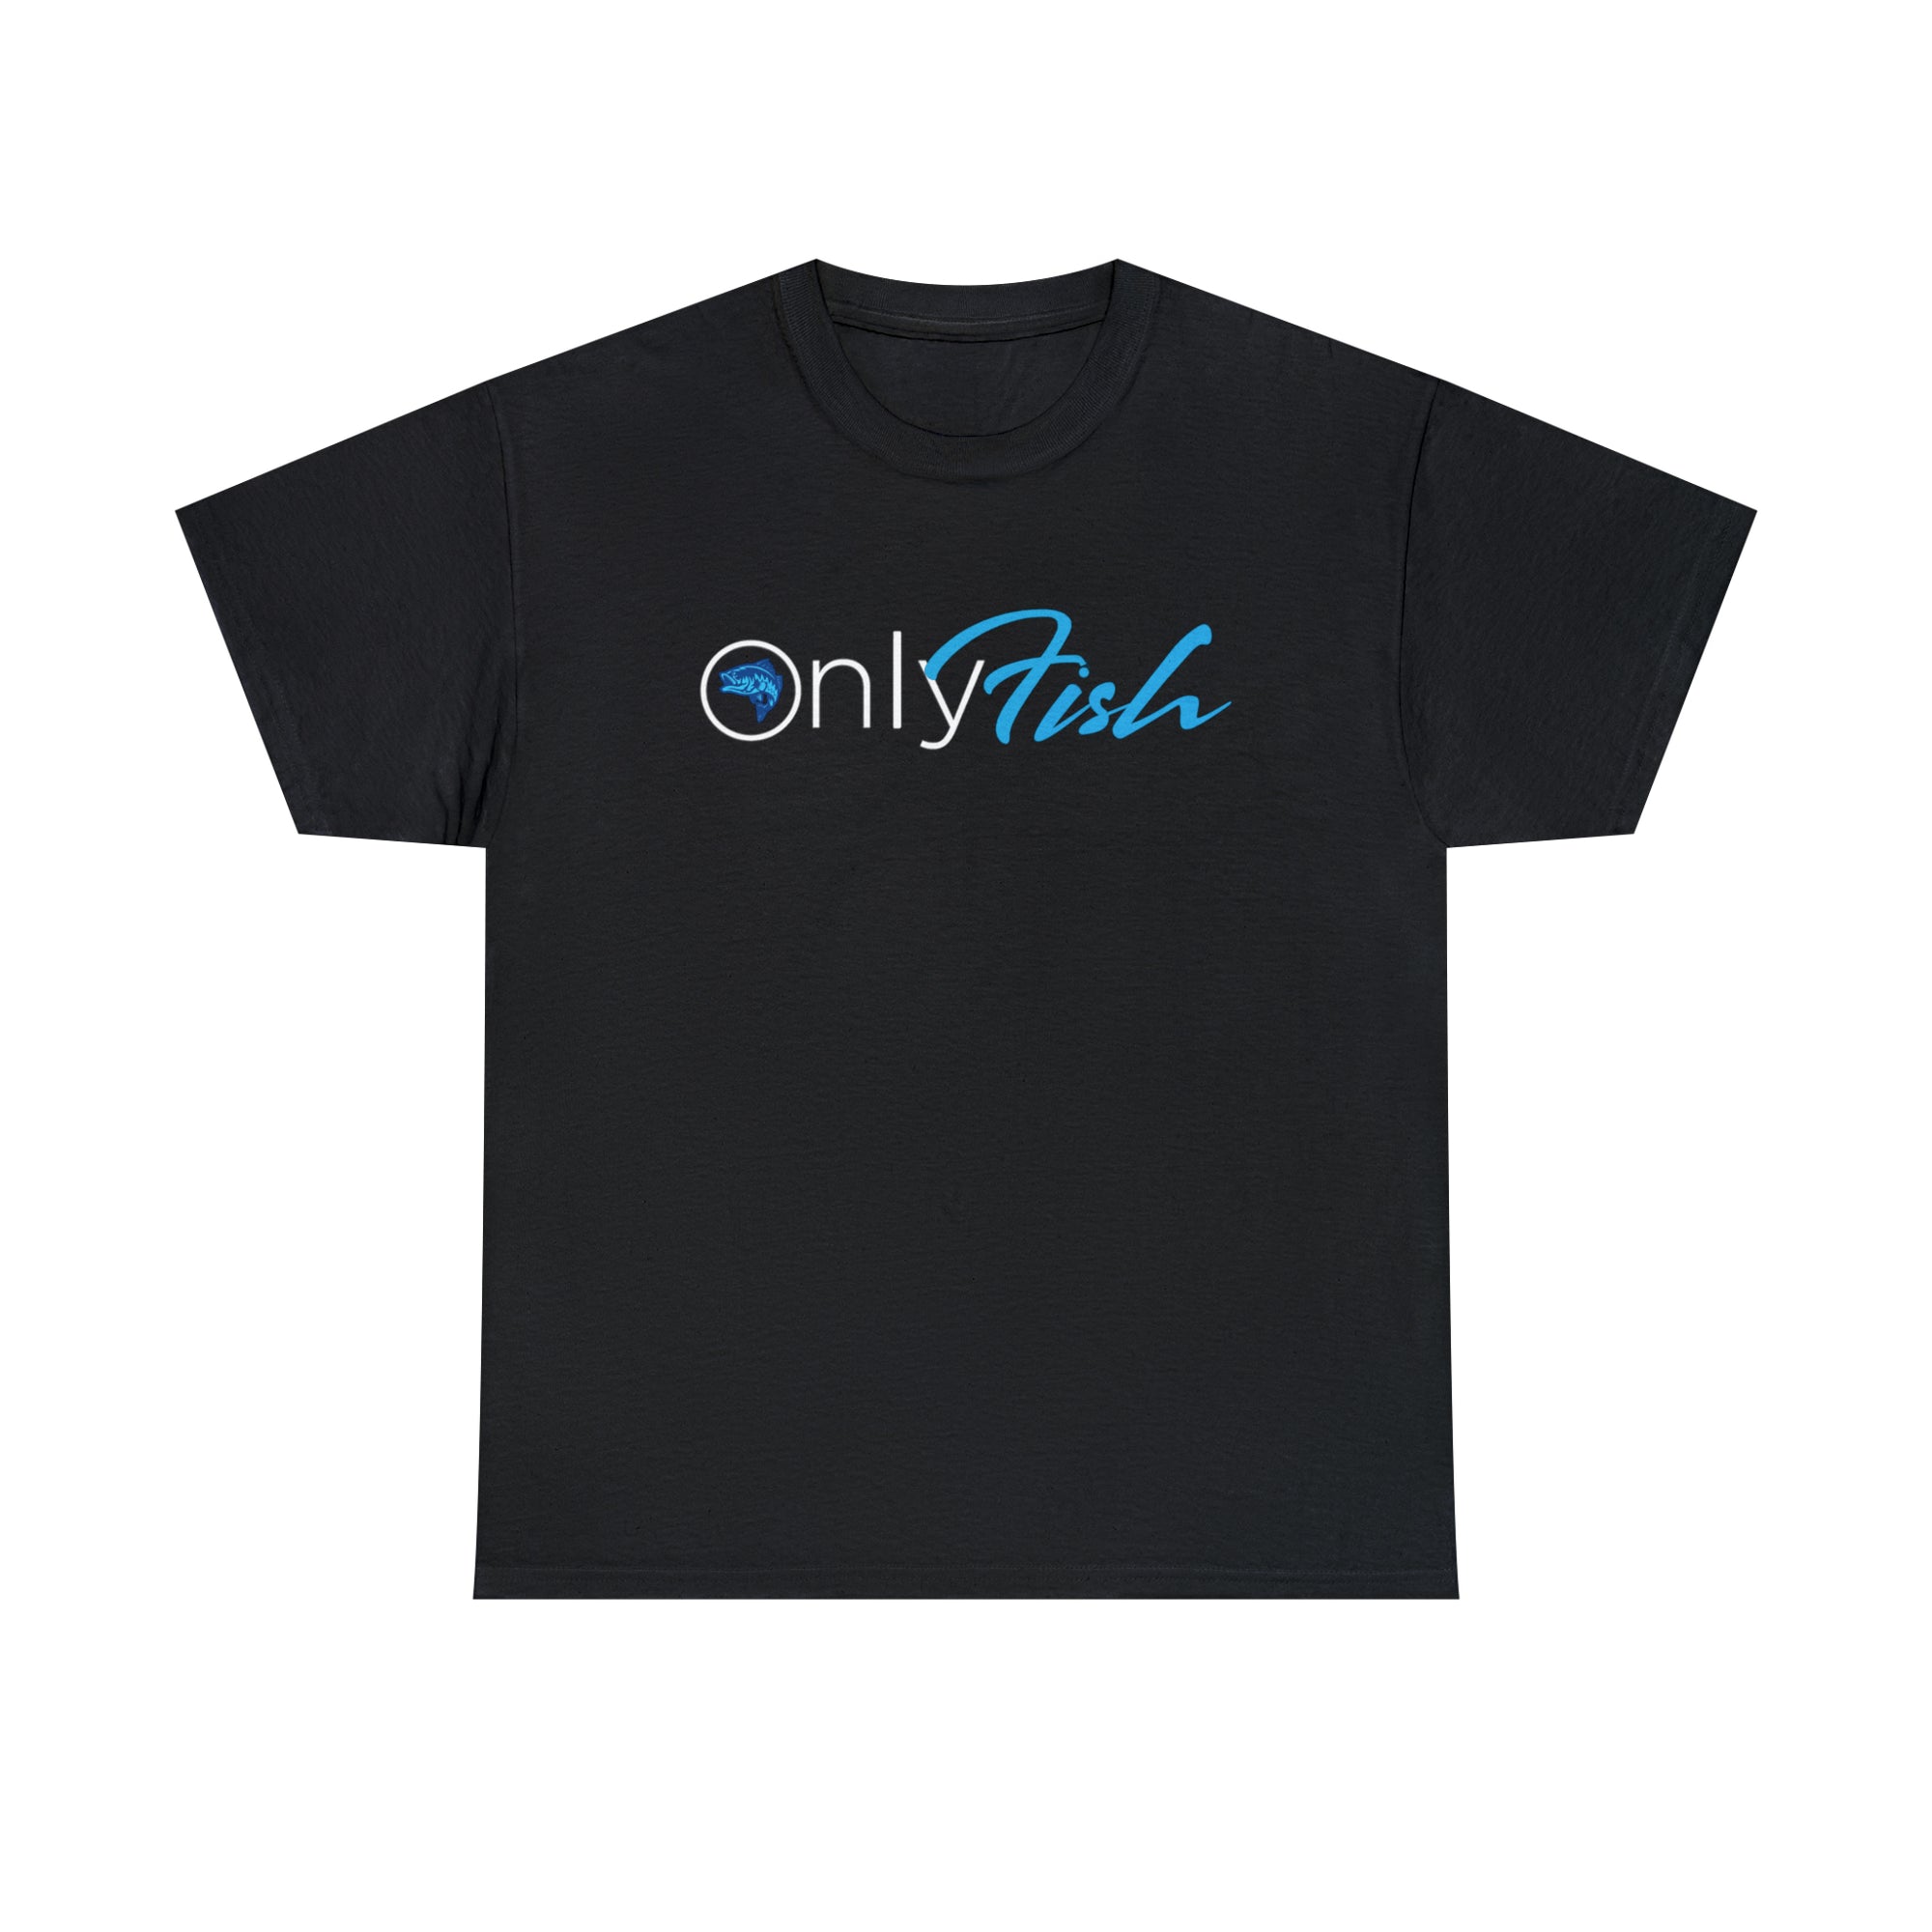 Onlyfish T-shirt, Only fish shirt, onlyfishing shirt, fishing shirt, fisherman, fishing t-shirt,